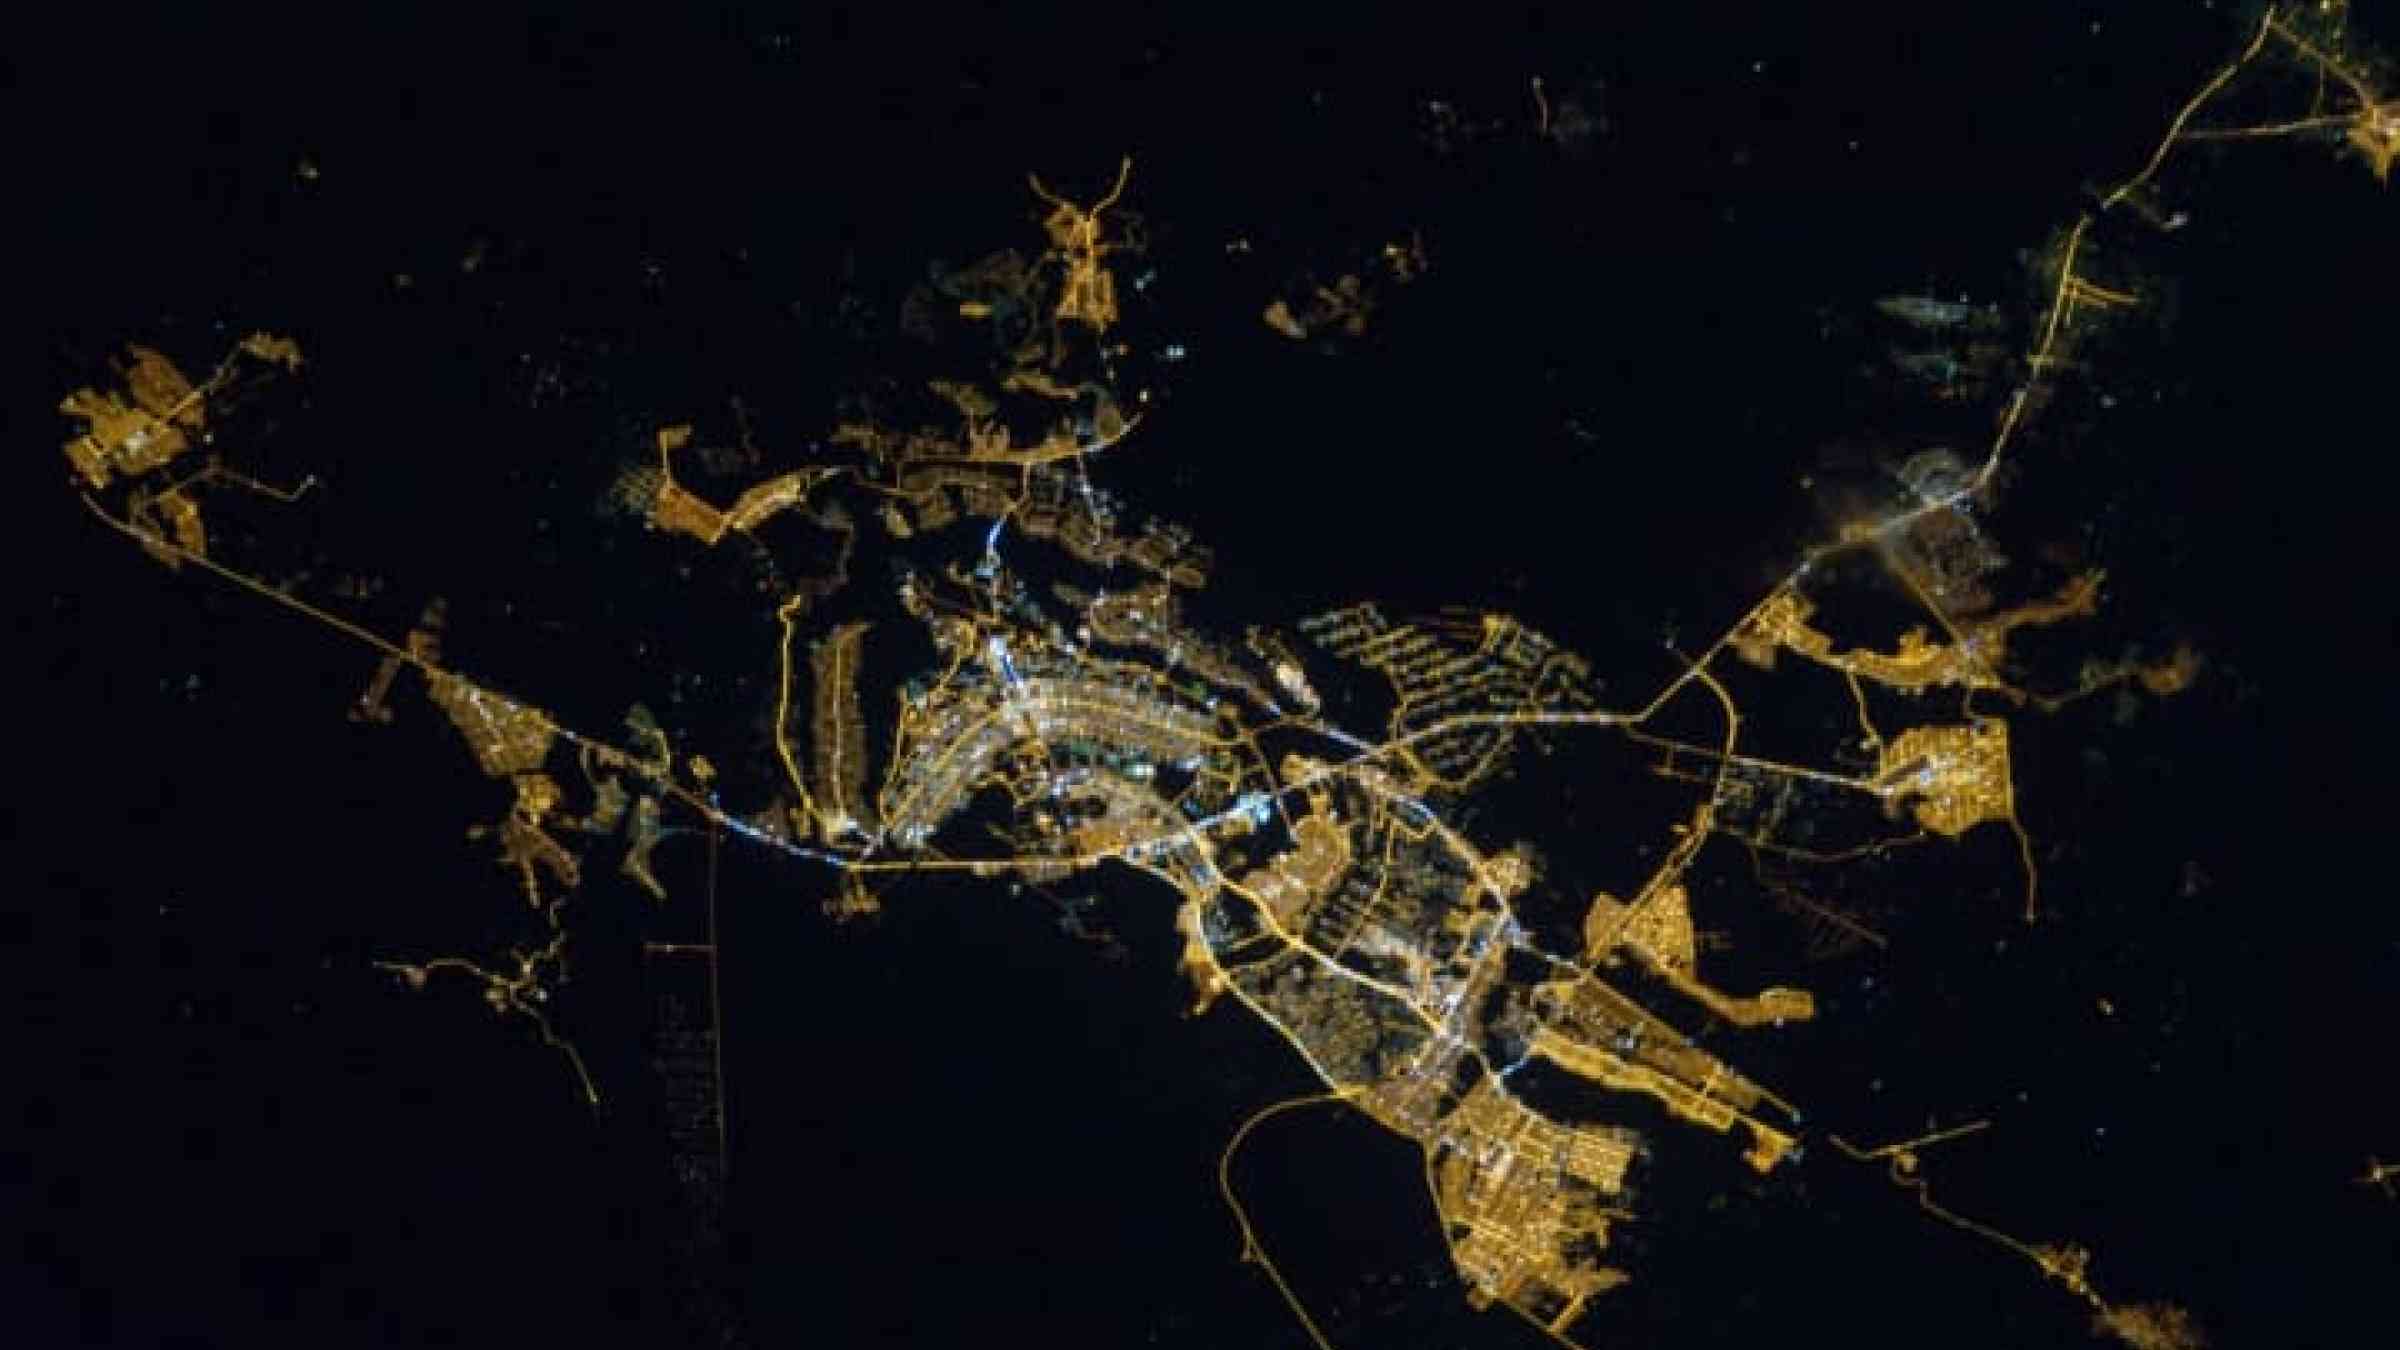 Vista nocturna de Brasilia desde la Estación Espacial Internacional. Ceilândia, al oeste de Brasilia, era un asentamiento informal reestructurado por el Gobierno en 1970 que se ha convertido ahora en una ciudad satélite.